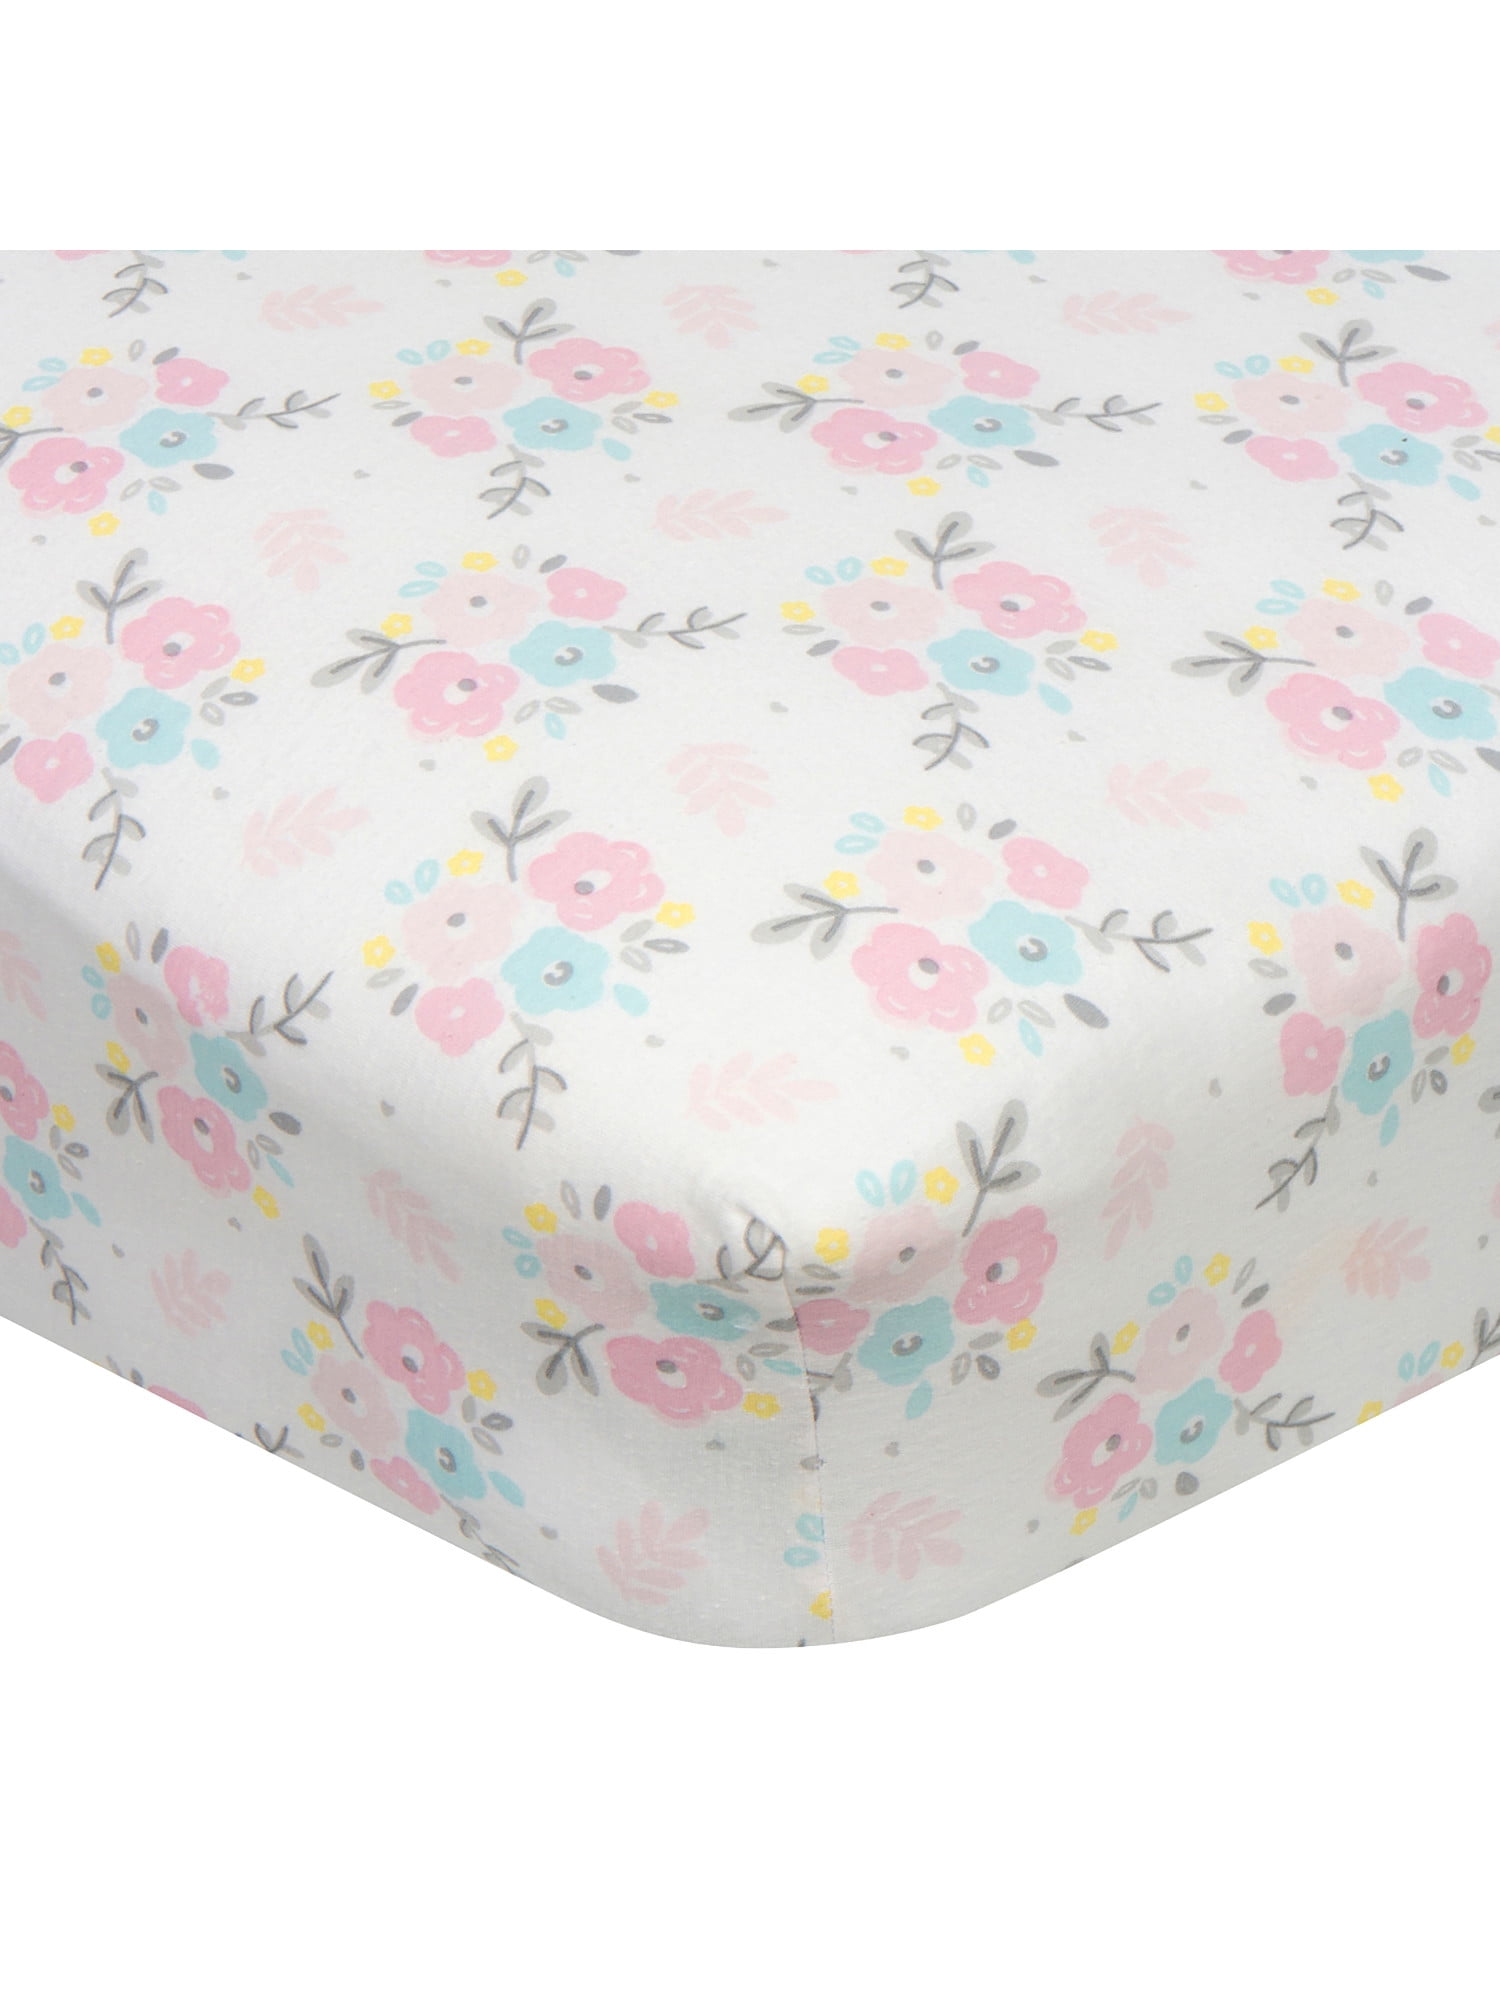 2 x Baby Pram/Crib/ Moses Basket  Flat Sheet 100% Luxury Cotton Pink 